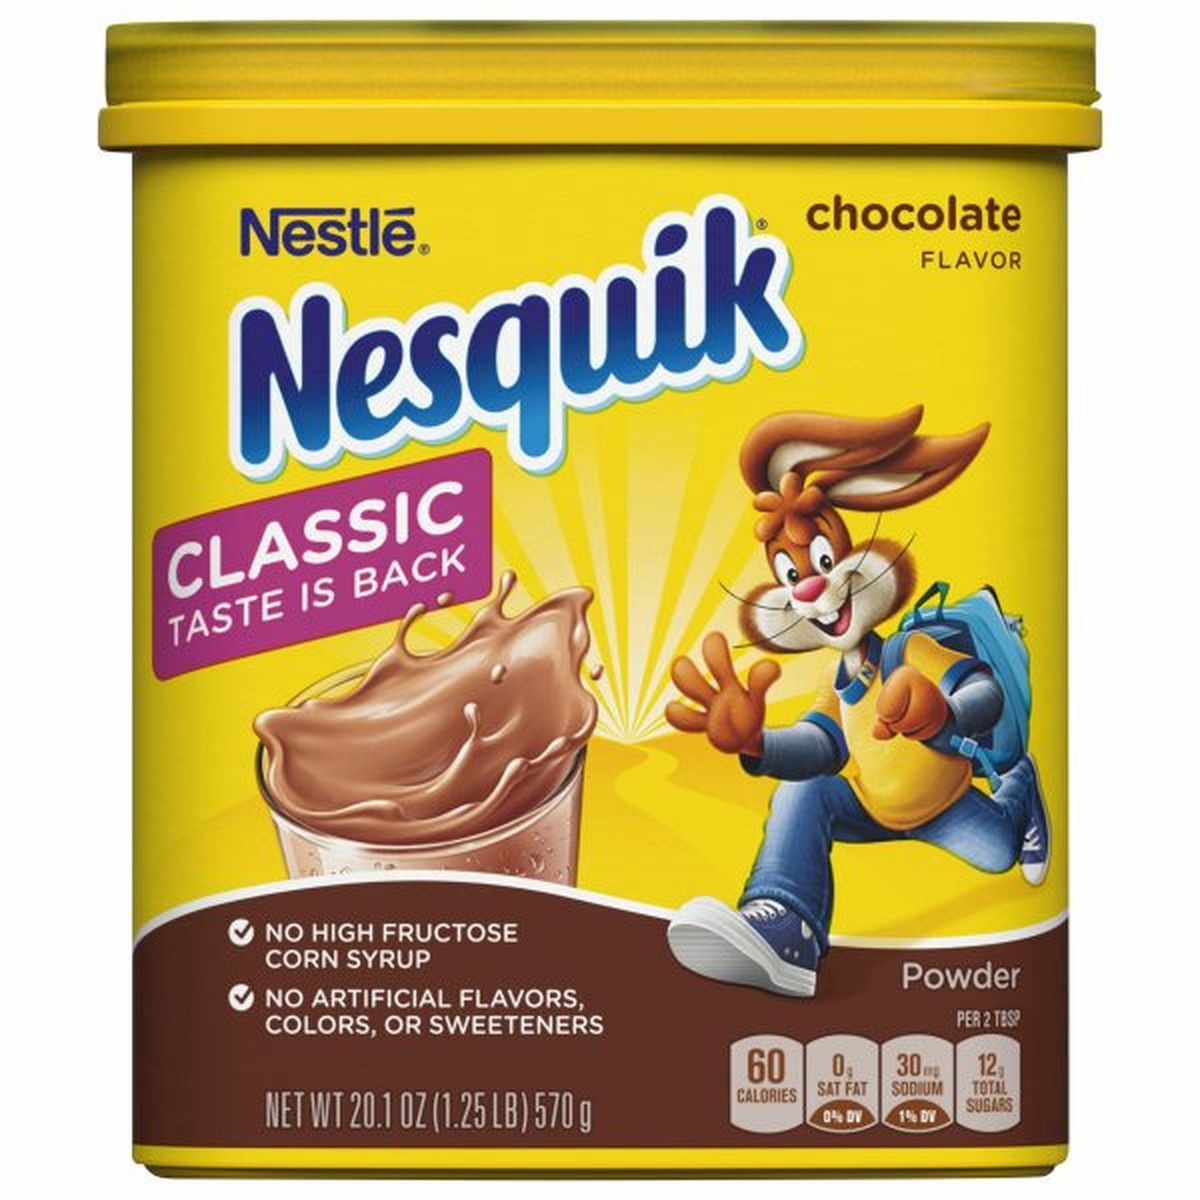 Calories in Nestle Nesquik Powder, Chocolate Flavor